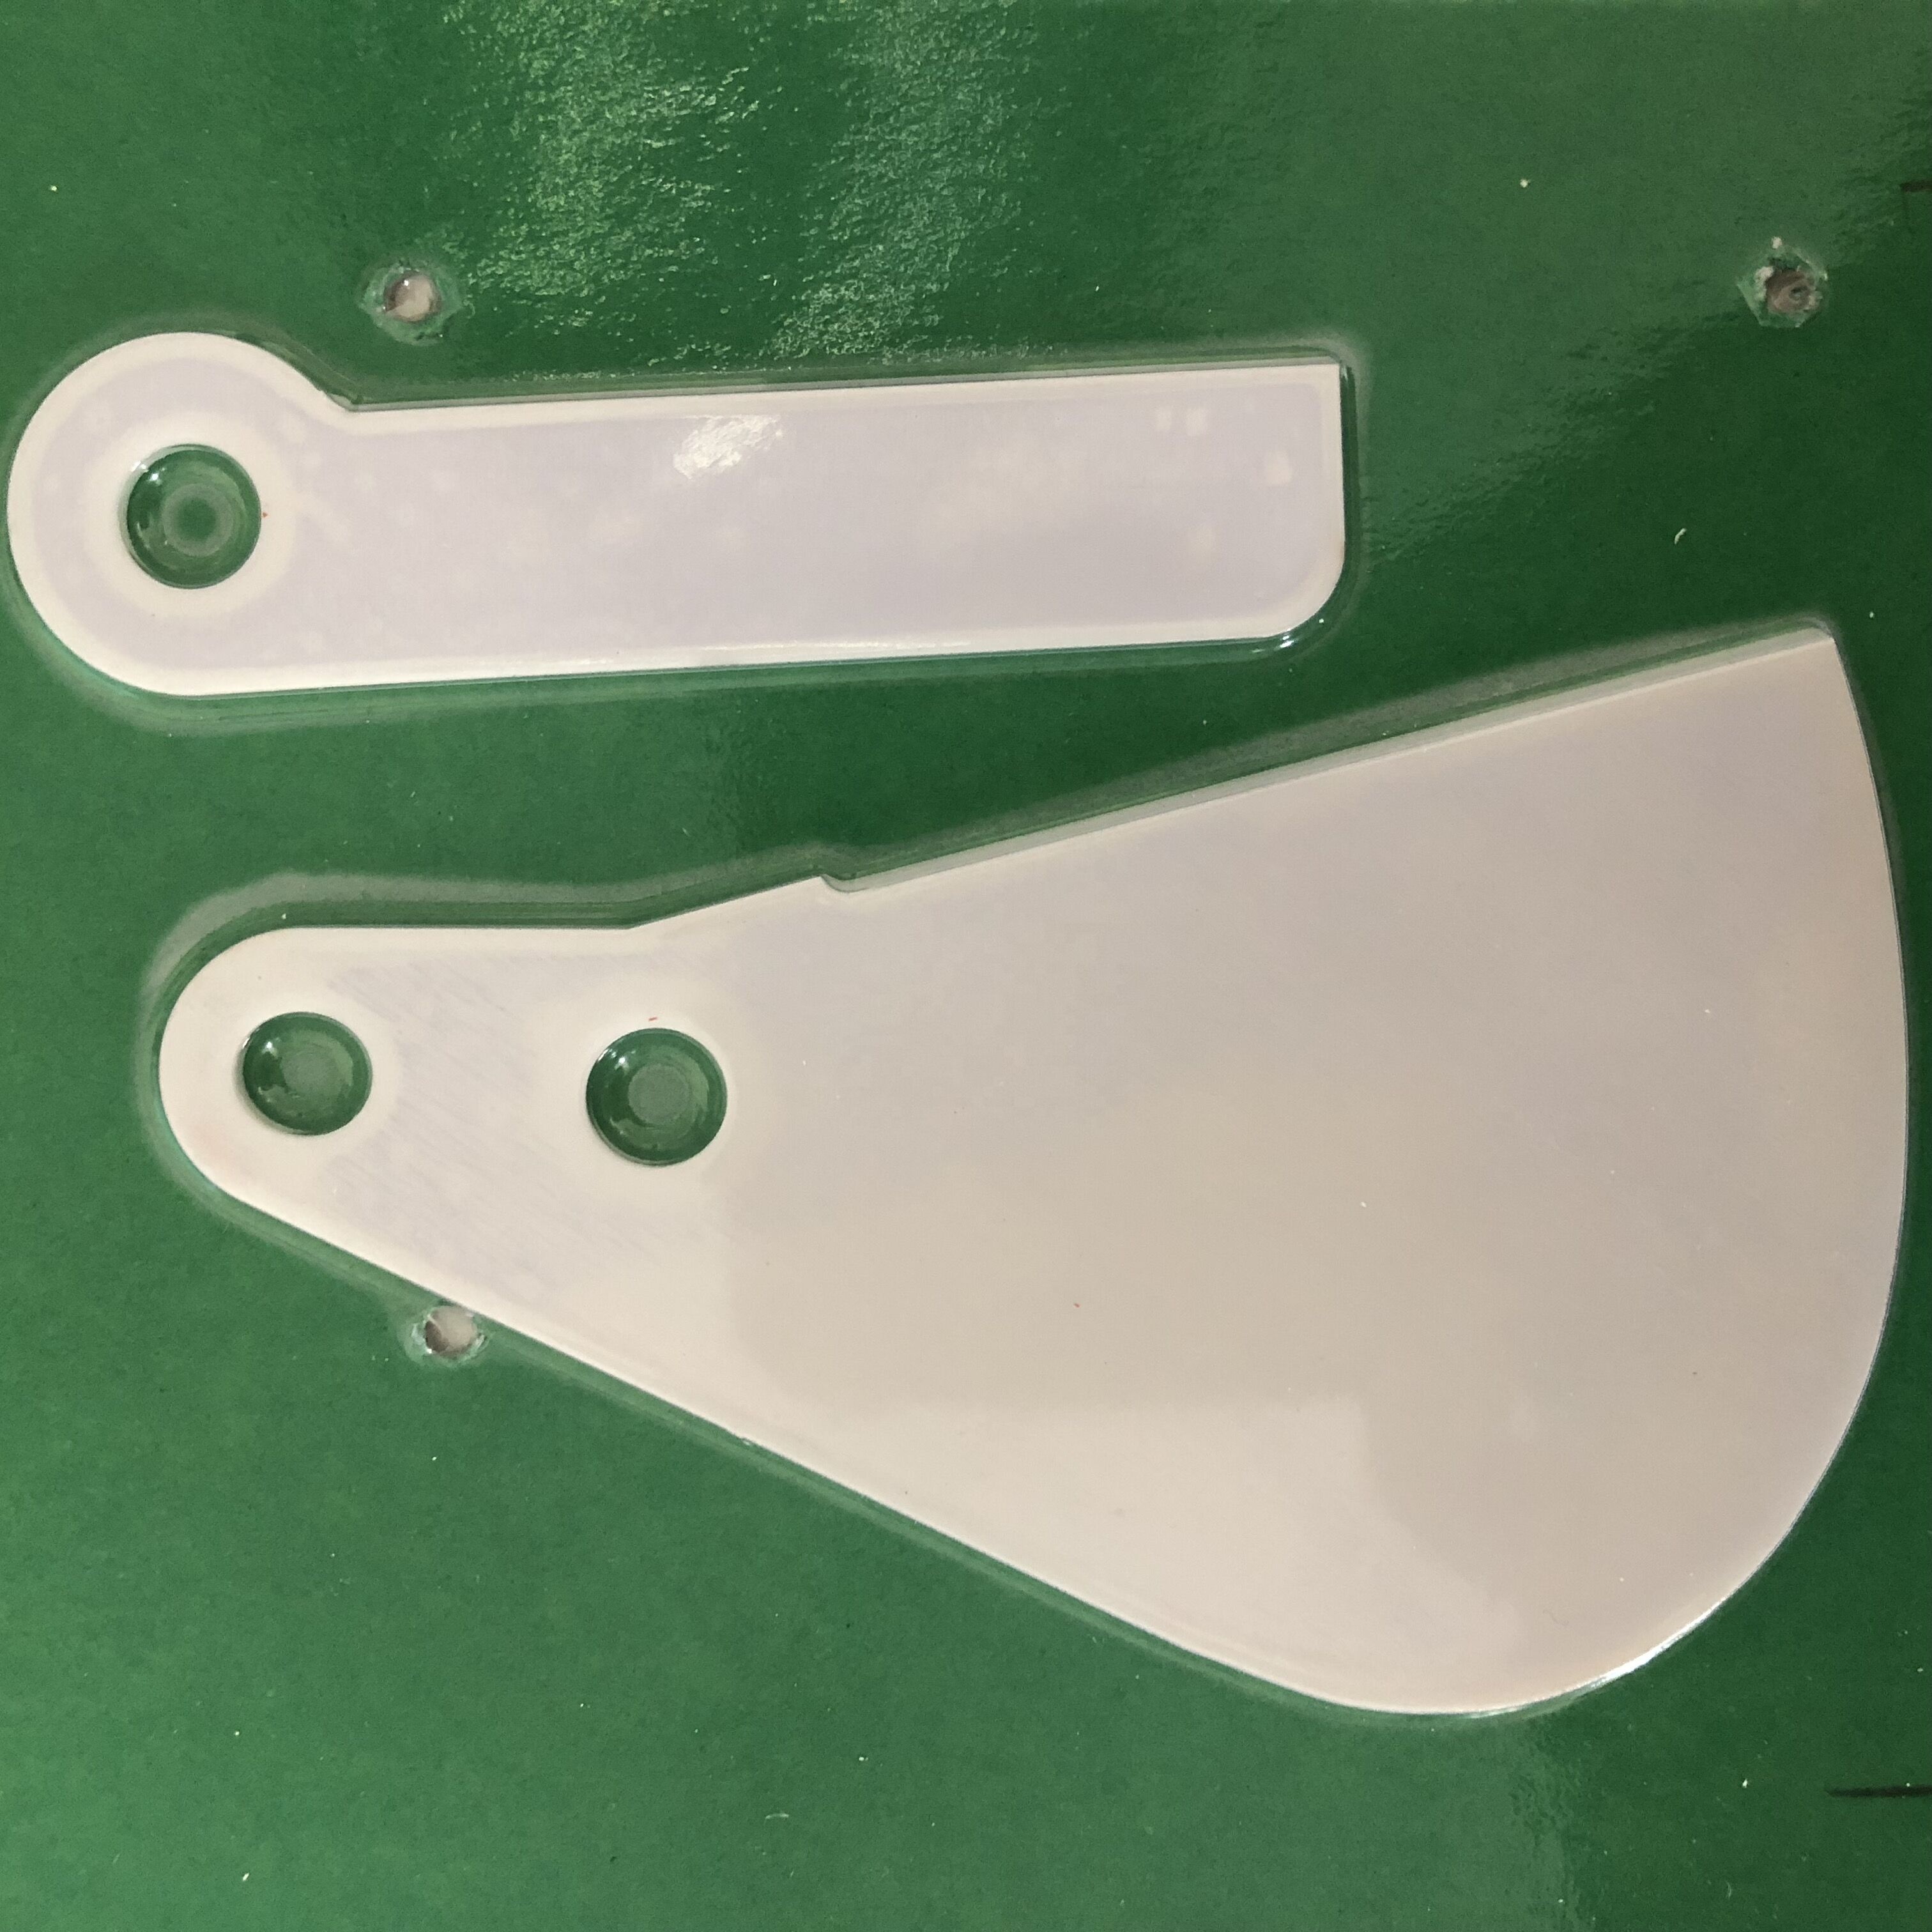 murata machconer ceramic Blade with part number 008-370-005/006